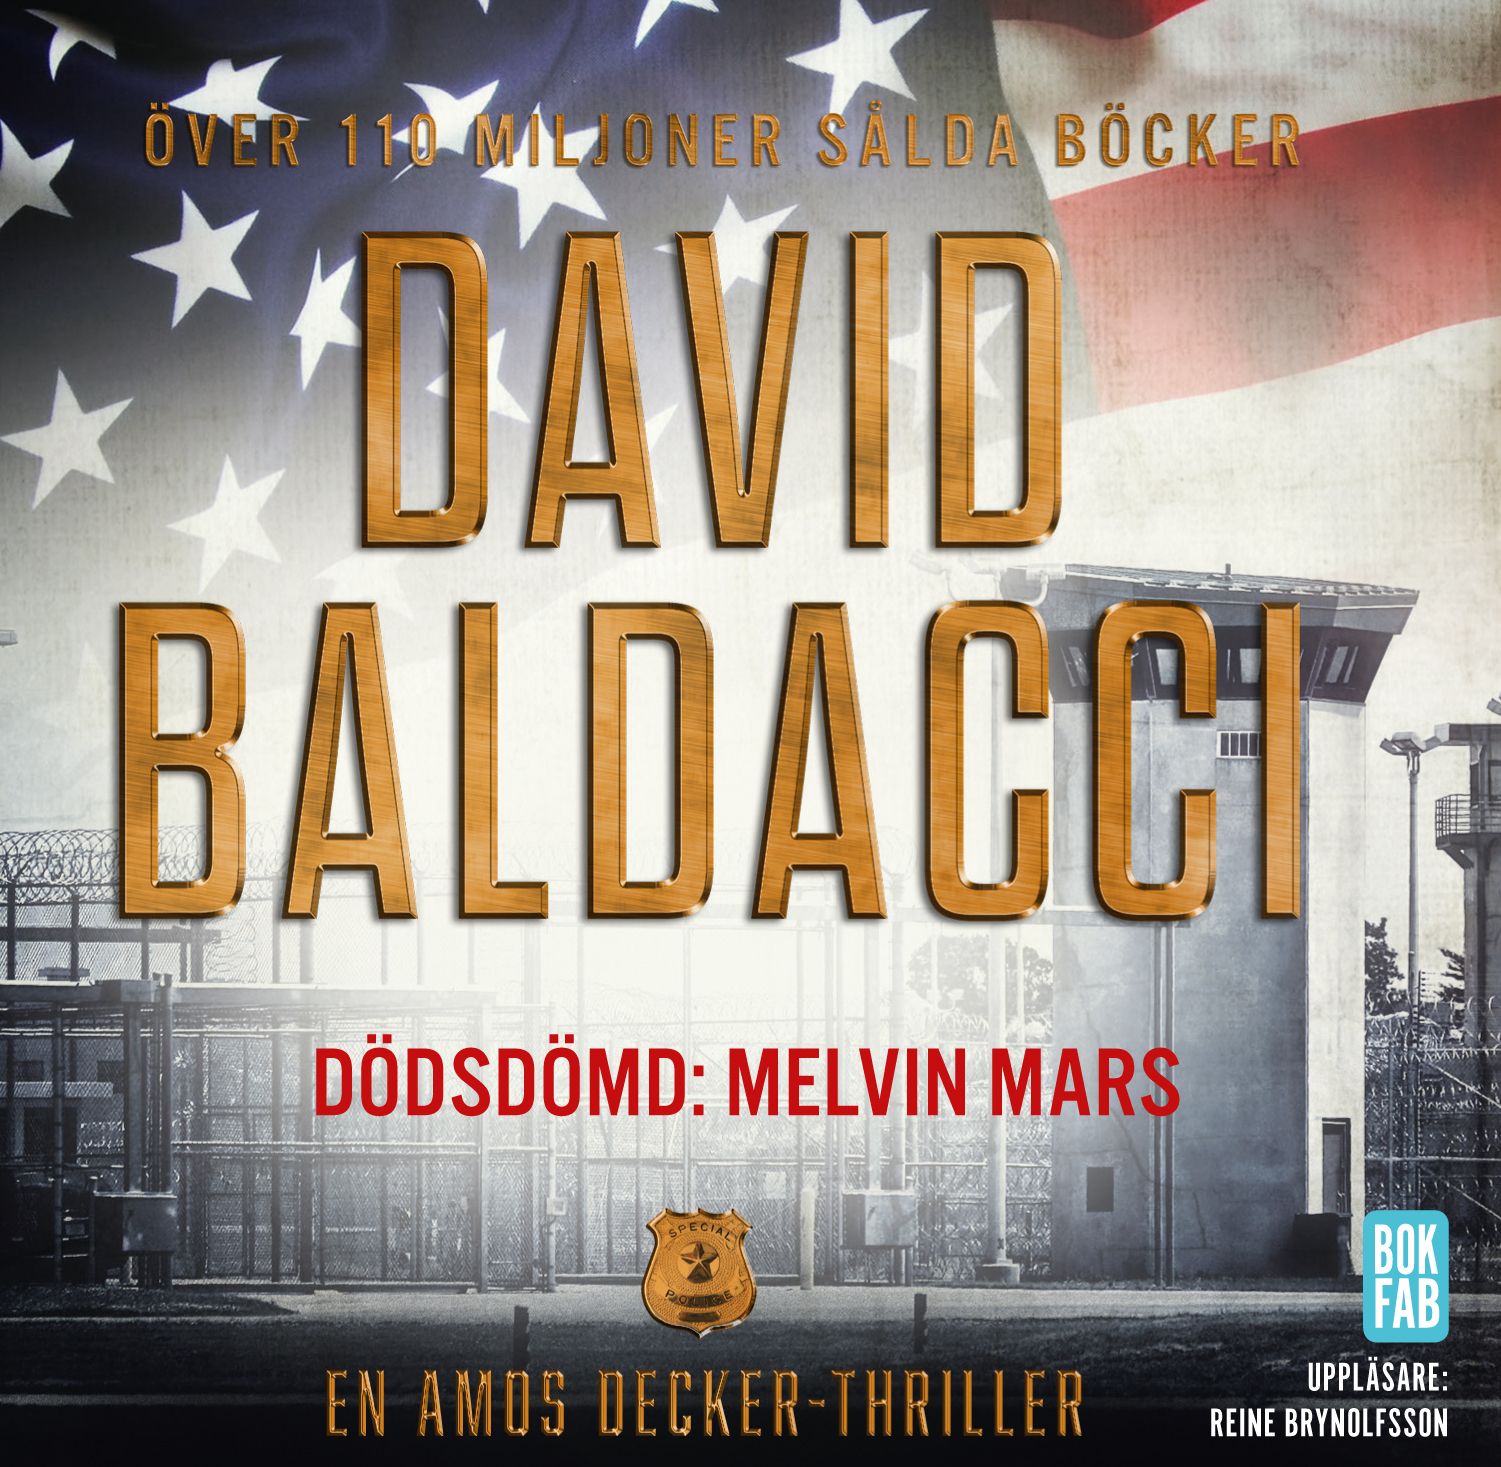 Dödsdömd: Melvin Mars, audiobook by David Baldacci